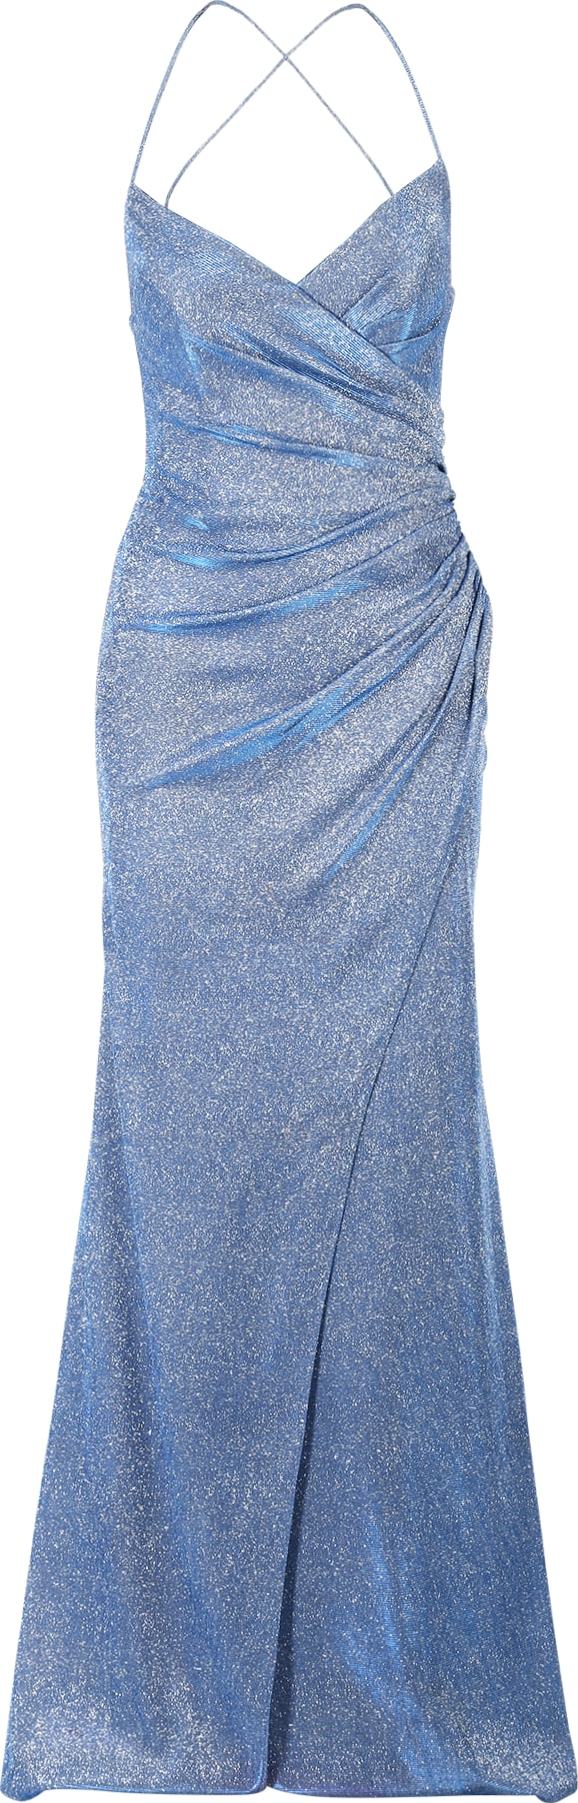 LUXUAR Společenské šaty modrá / stříbrná